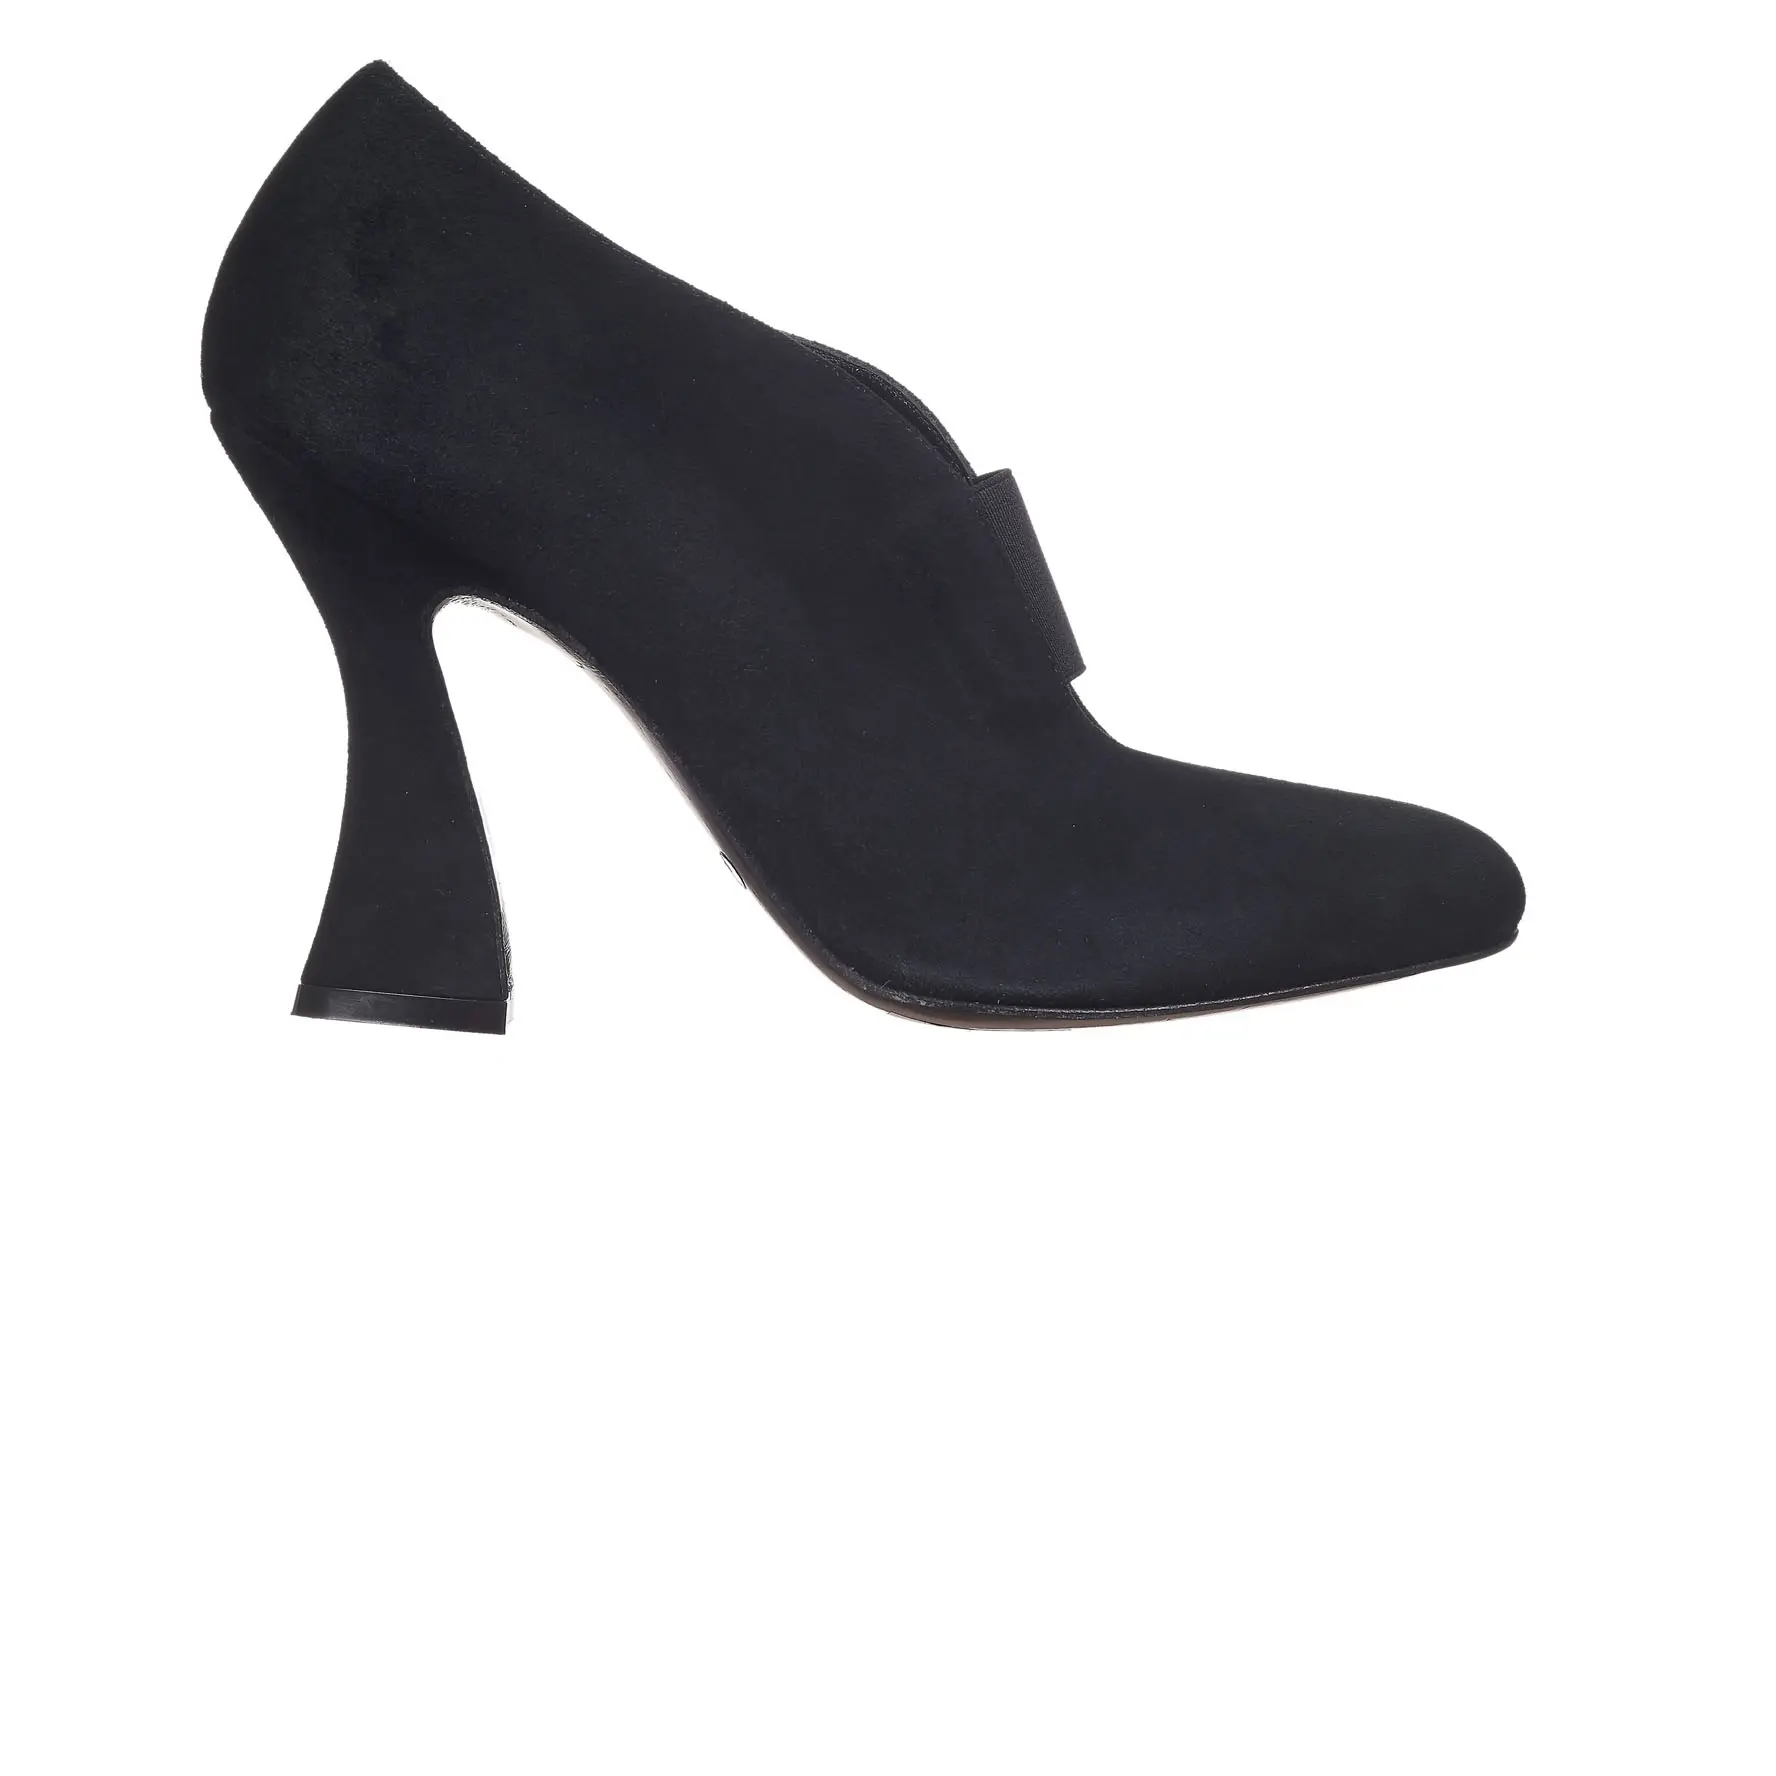 100% इटली में किए गए जूते महिलाओं के लिए नई शैली असली लेदर काले साबर उच्च एड़ी महिला के लिए